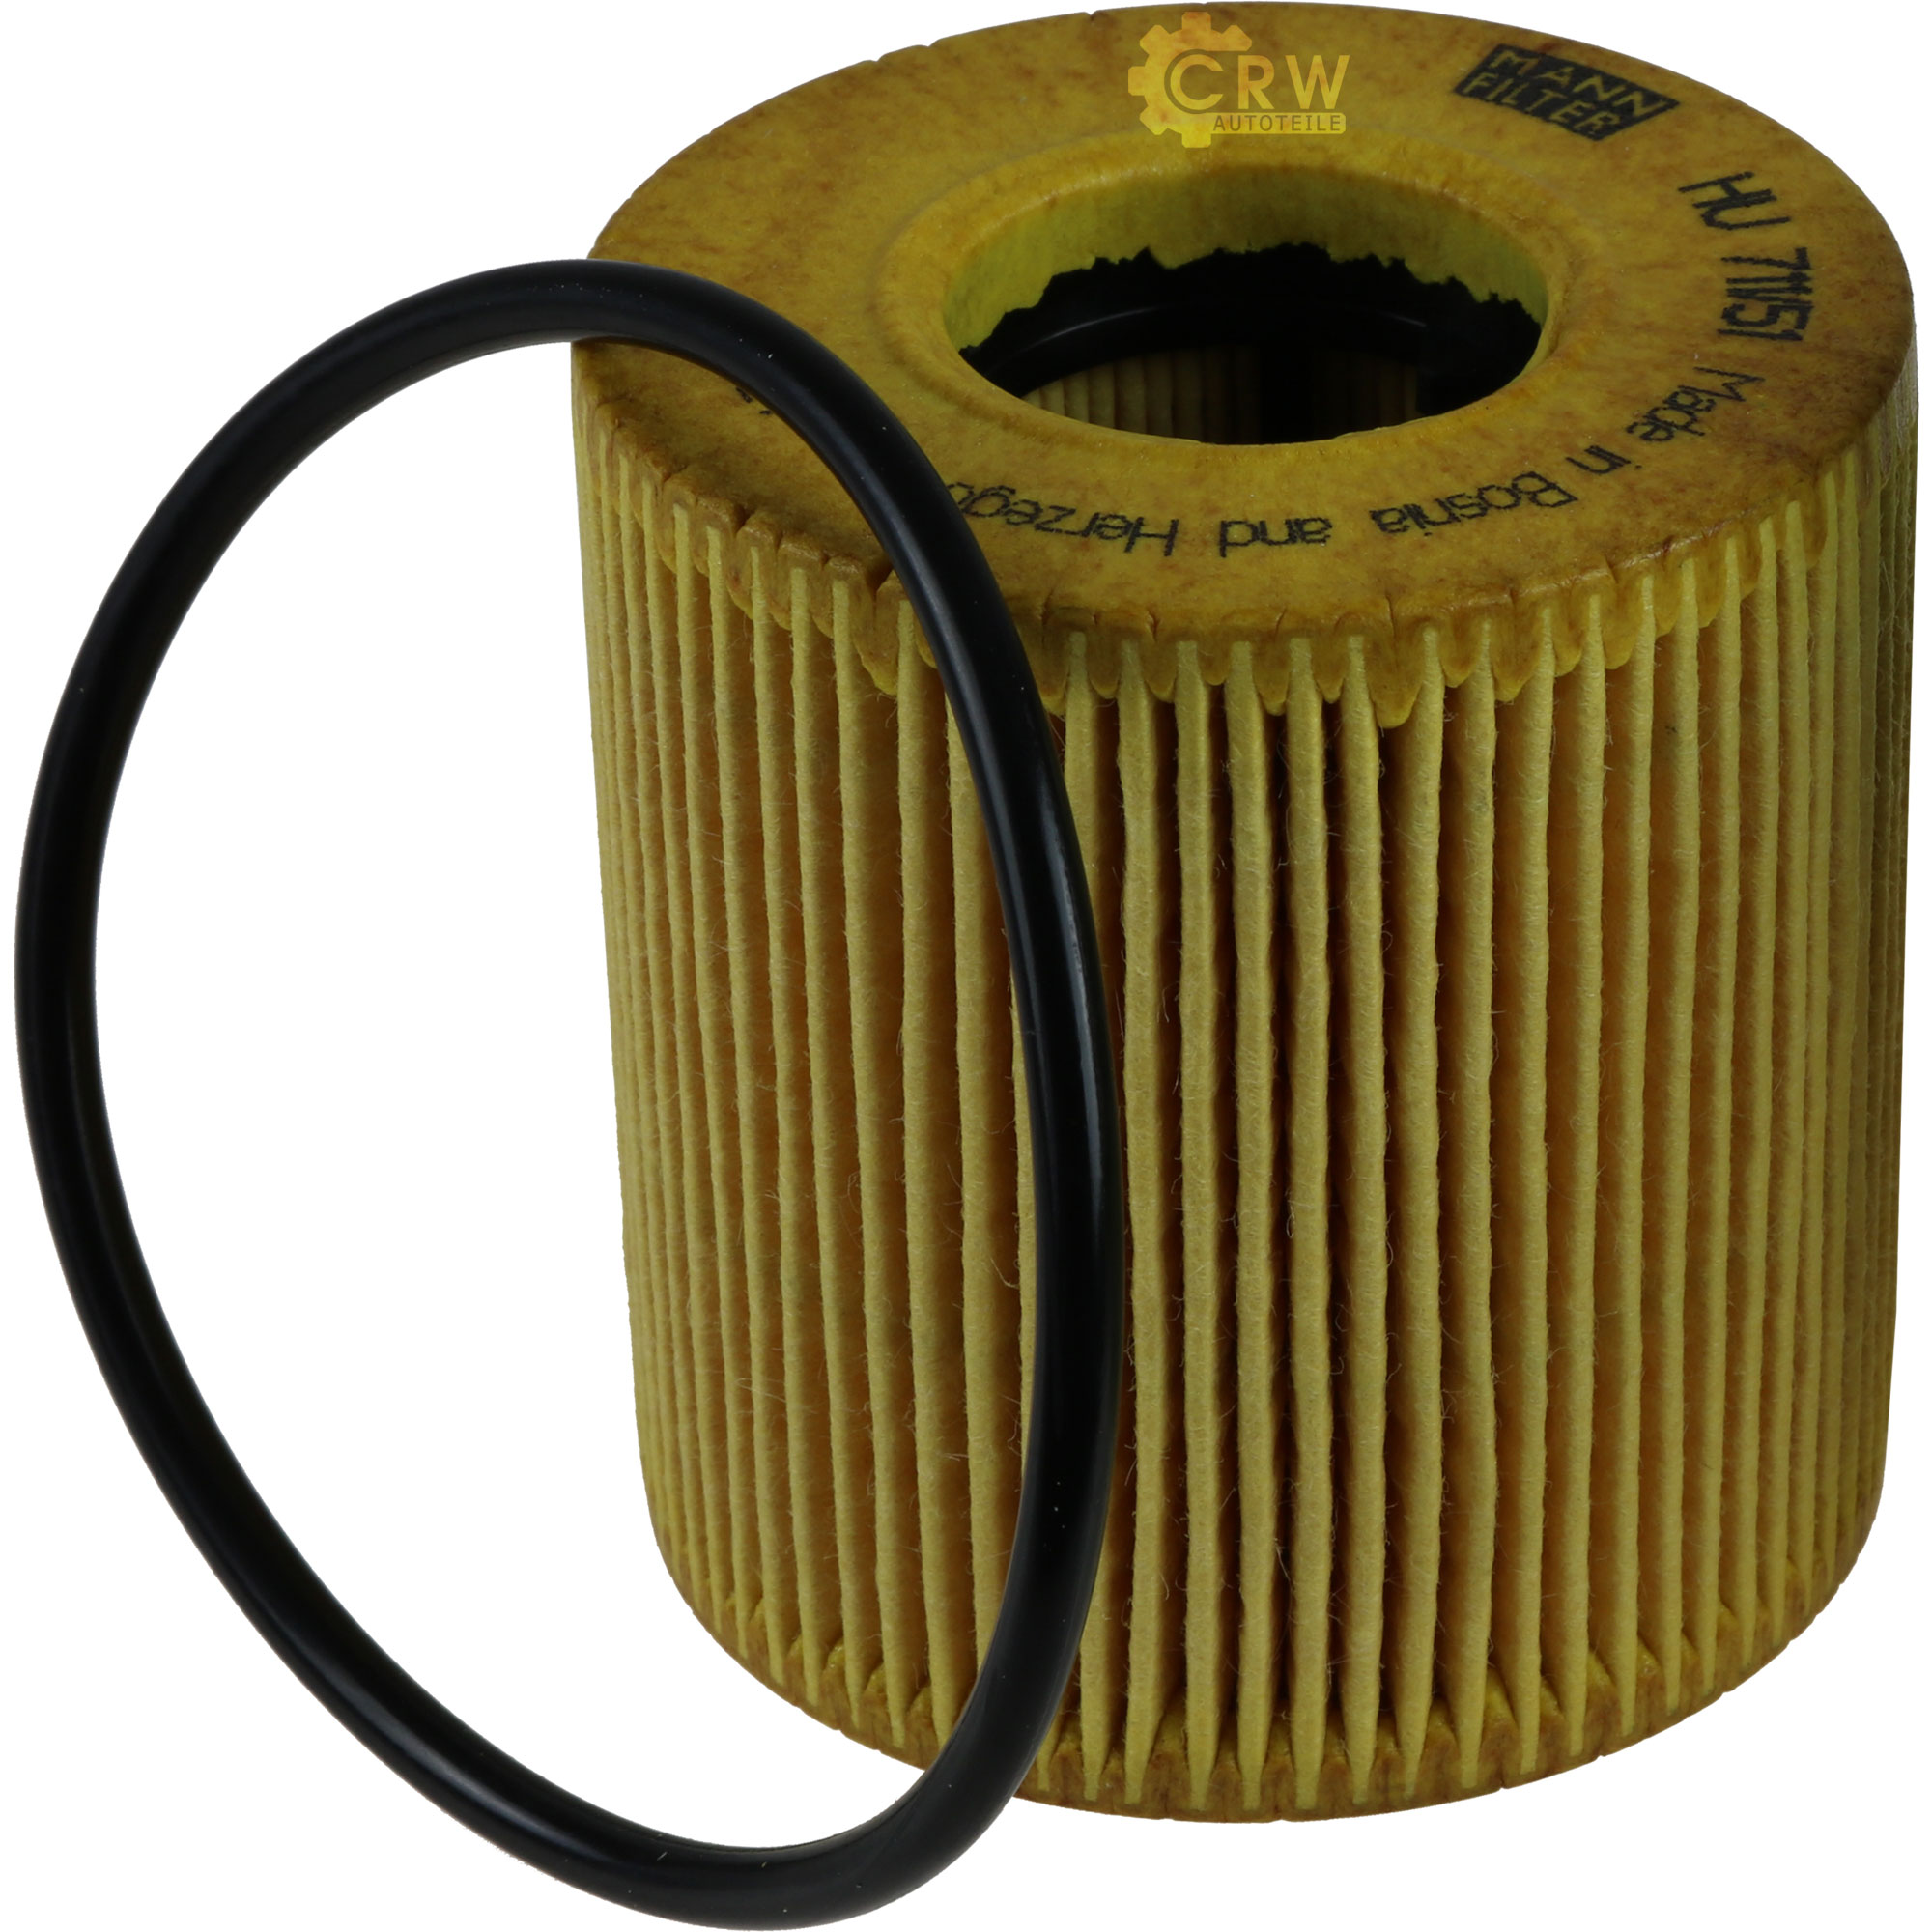 MANN-FILTER Ölfilter HU 711/51 x Oil Filter